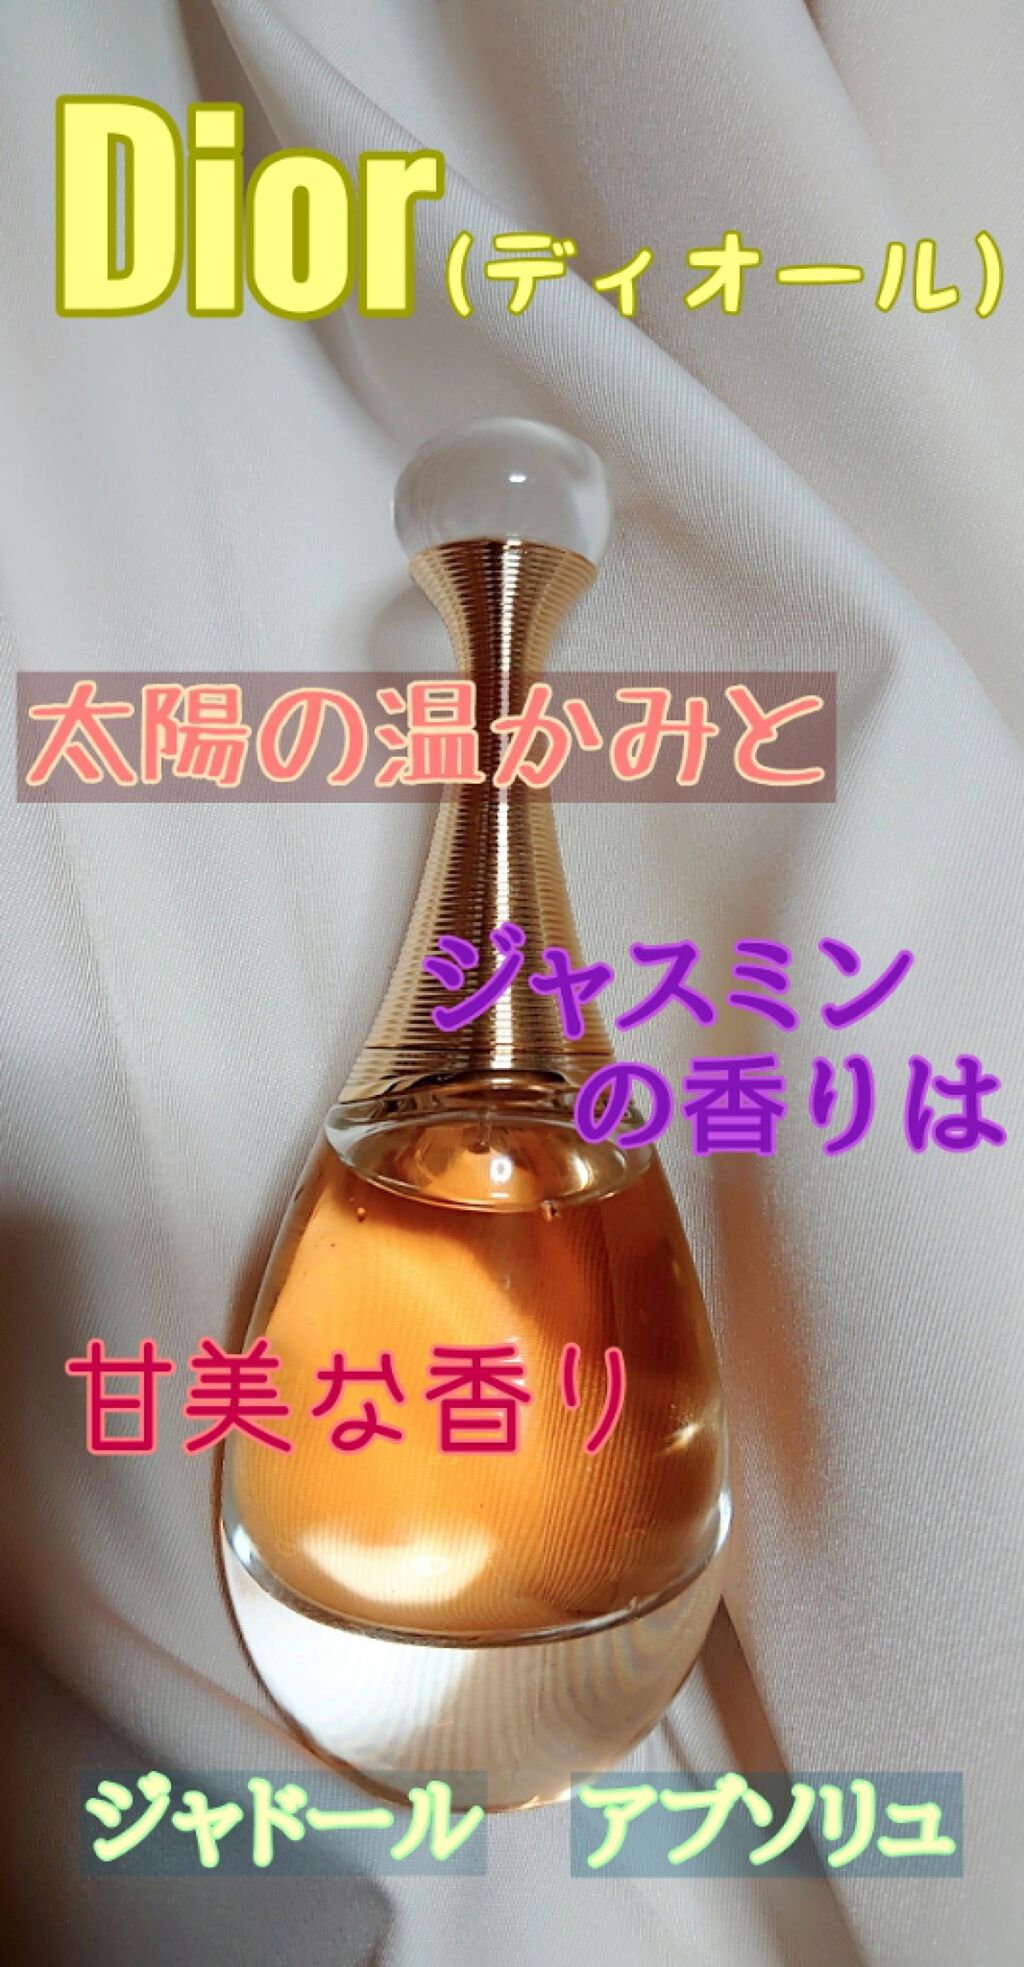 【新品未開封】Dior ジャドール アブソリュ 香水